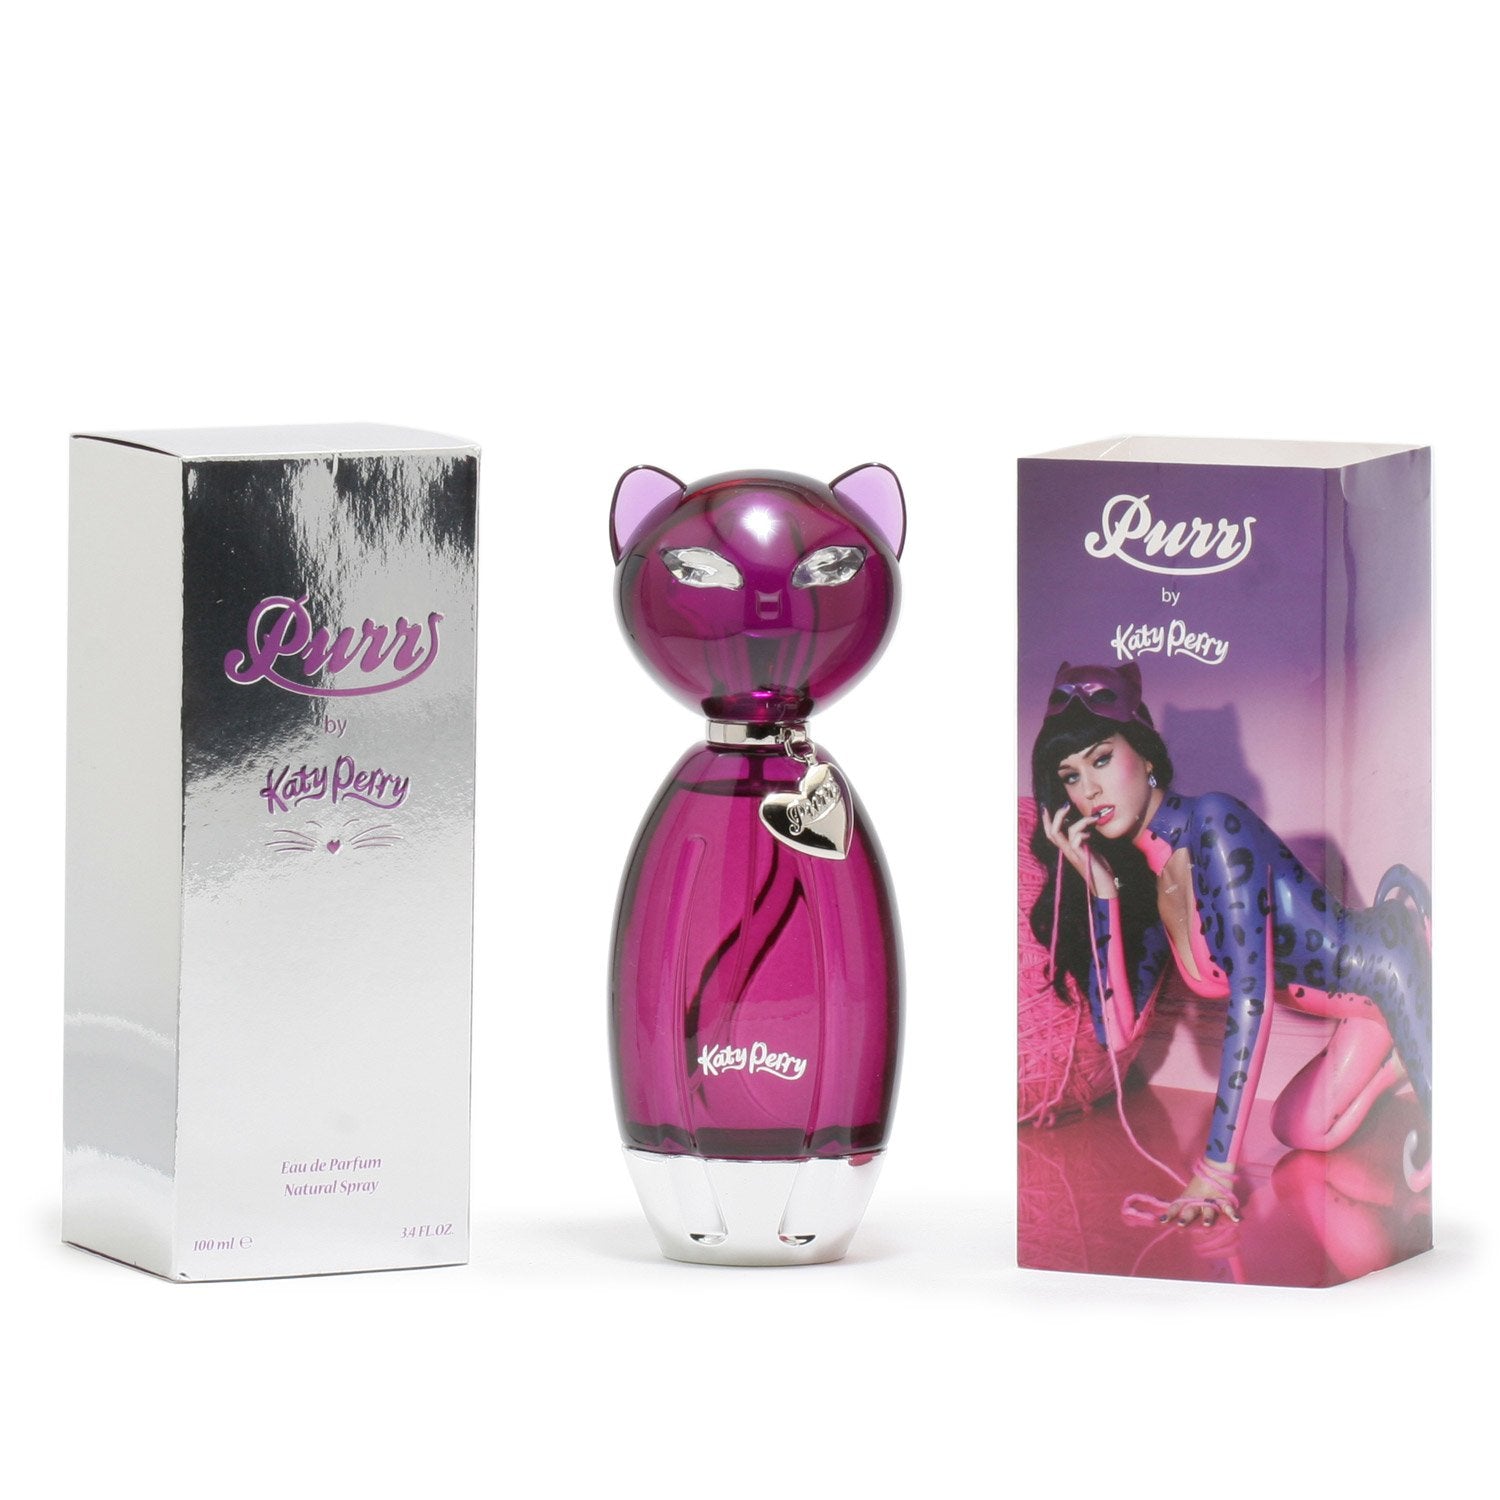 Perfume - KATY PERRY PURR FOR WOMEN - EAU DE PARFUM SPRAY, 3.4 OZ